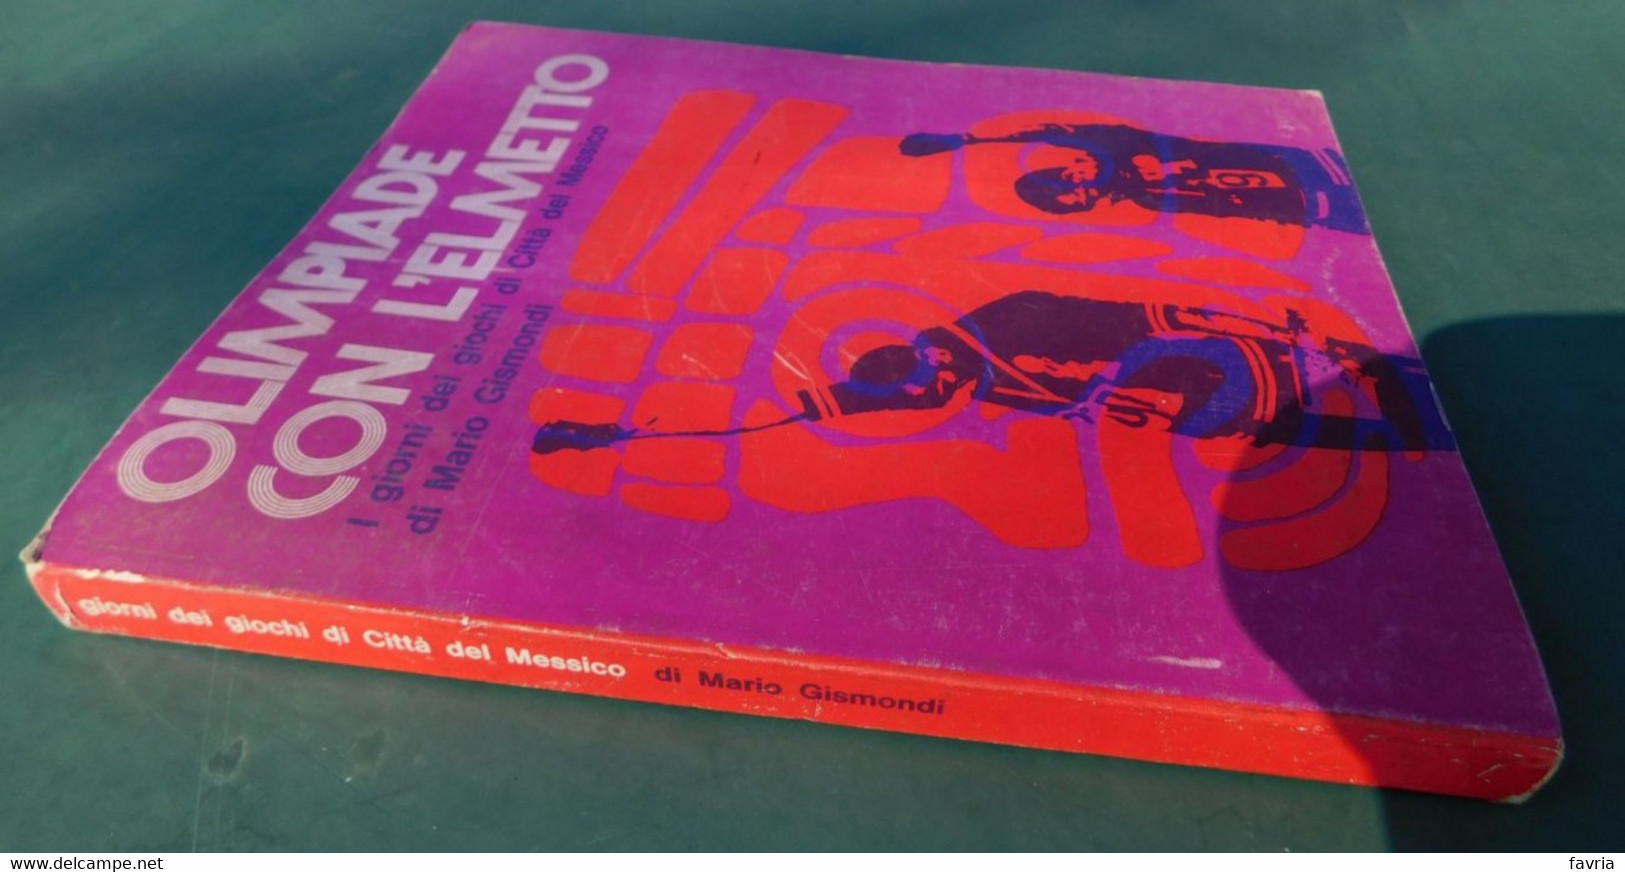 OLIMPIADE CON L'ELMETTO ( I Giorni Dei Giochi Di Città Del Messico) - Di Mario Gismondi - Ed. Gisca,1969 - Books